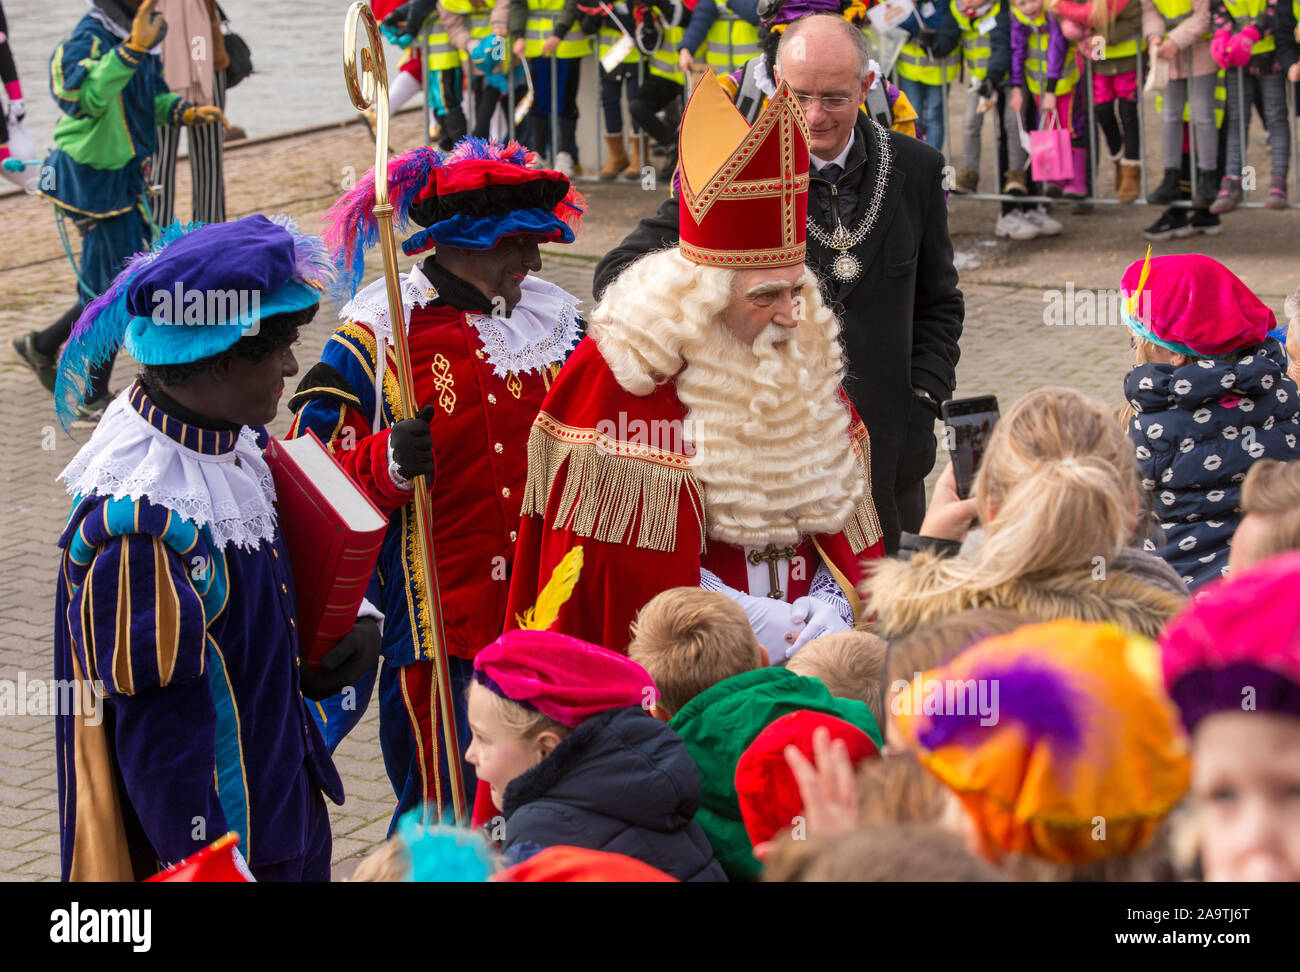 ENSCHEDE, Niederlande - 16.November 2019: Die niederländischen Santa Claus genannt interklaas' ist Begrüßung der Kinder, nachdem er auf einem Boot in einem dutc eingetroffen ist Stockfoto